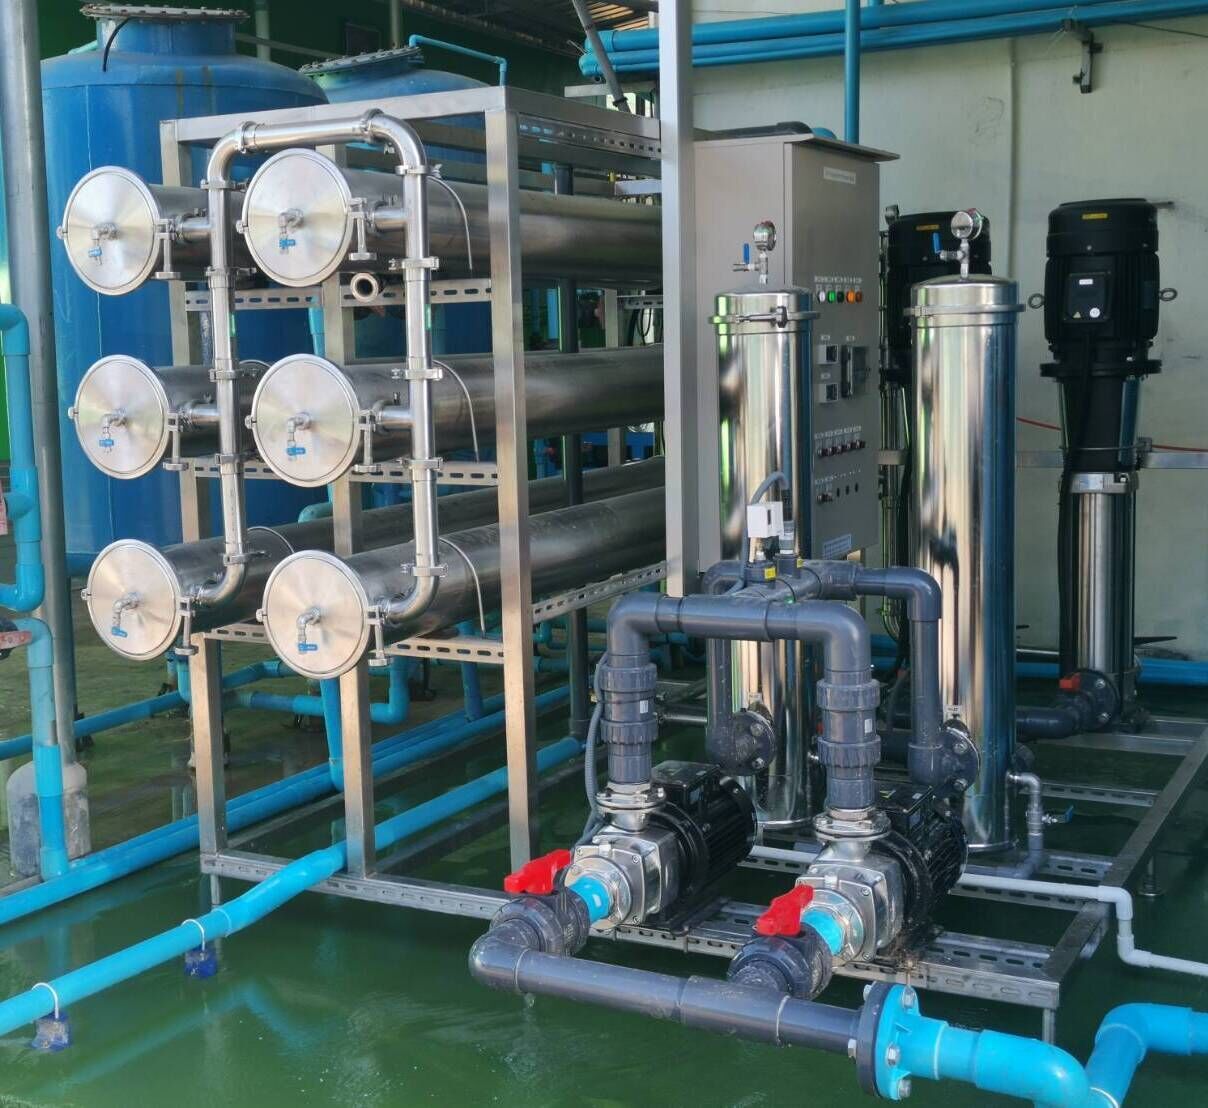 เครื่องกรองน้ำอุตสาหรรมโรงงาน ระบบ RO ระบบน้ำใช้ในโรงงาน ระบบผลิตน้ำอุตสาหกรรม เครื่องกรองน้ำโีรงงาน เครื่องกรองระบบน้ำสำหรับโรงงาน ระบบน้ำใช้ในโรงงาน